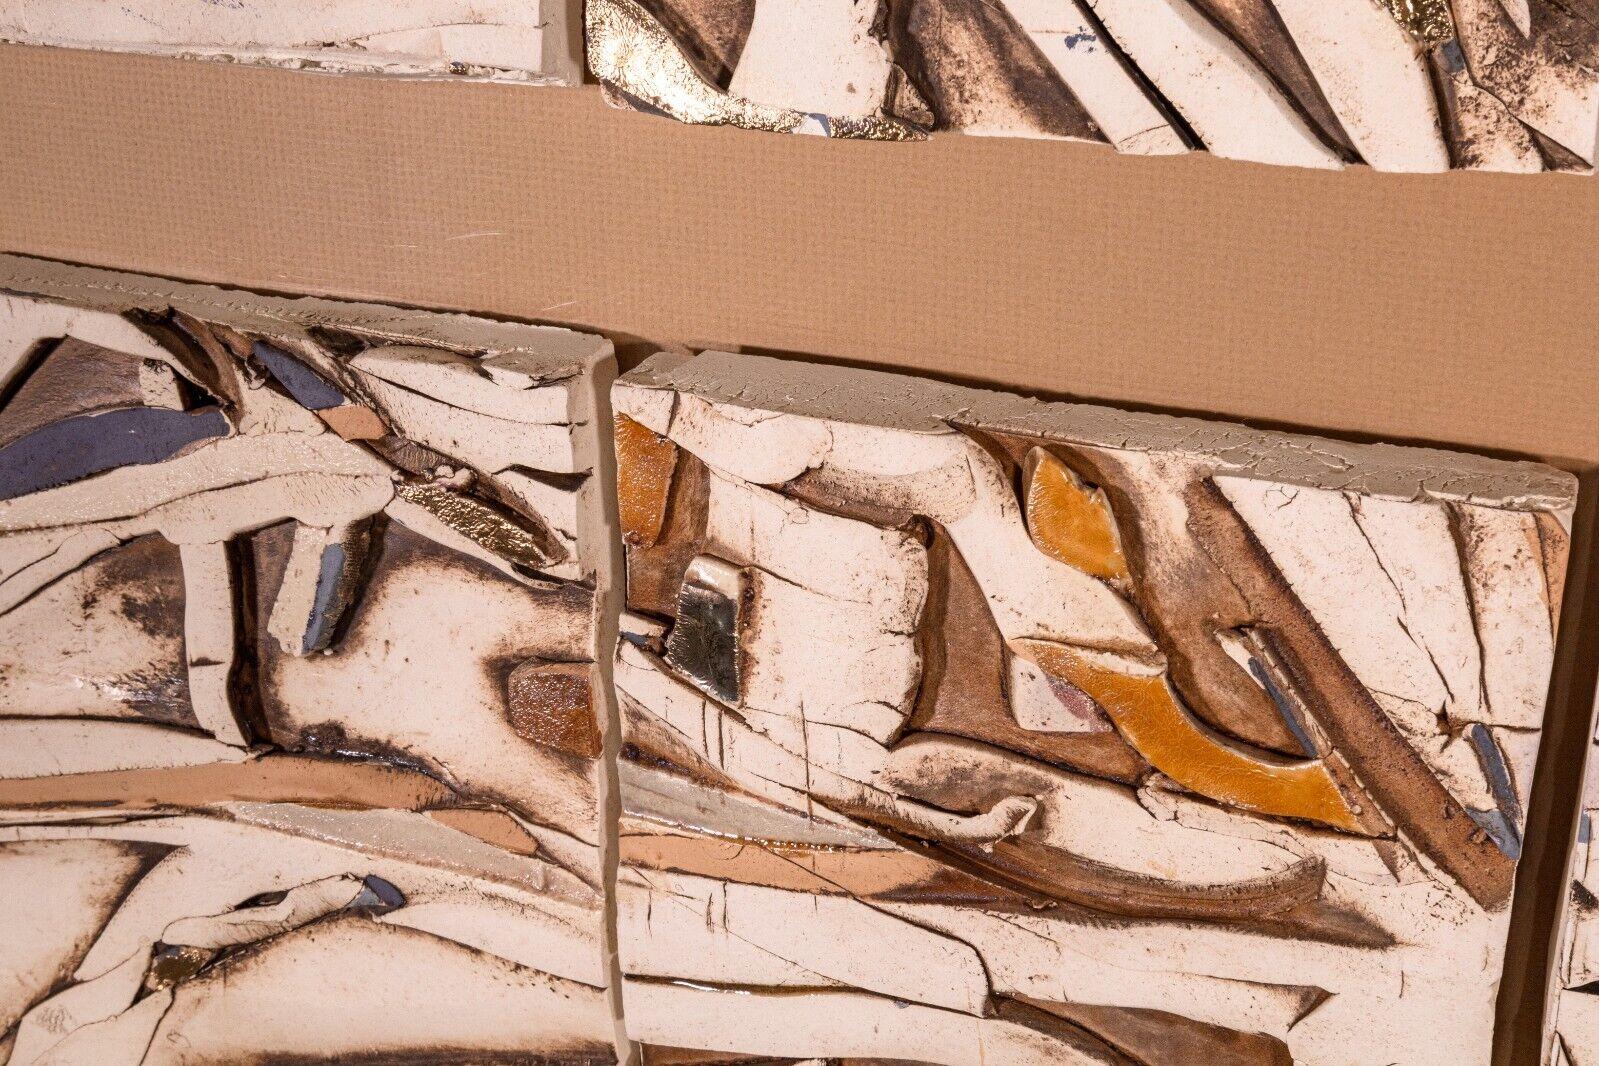 Postmodern Abstract Expressionist Vintage Textured Tile Art Signed 1985 Framed For Sale 2